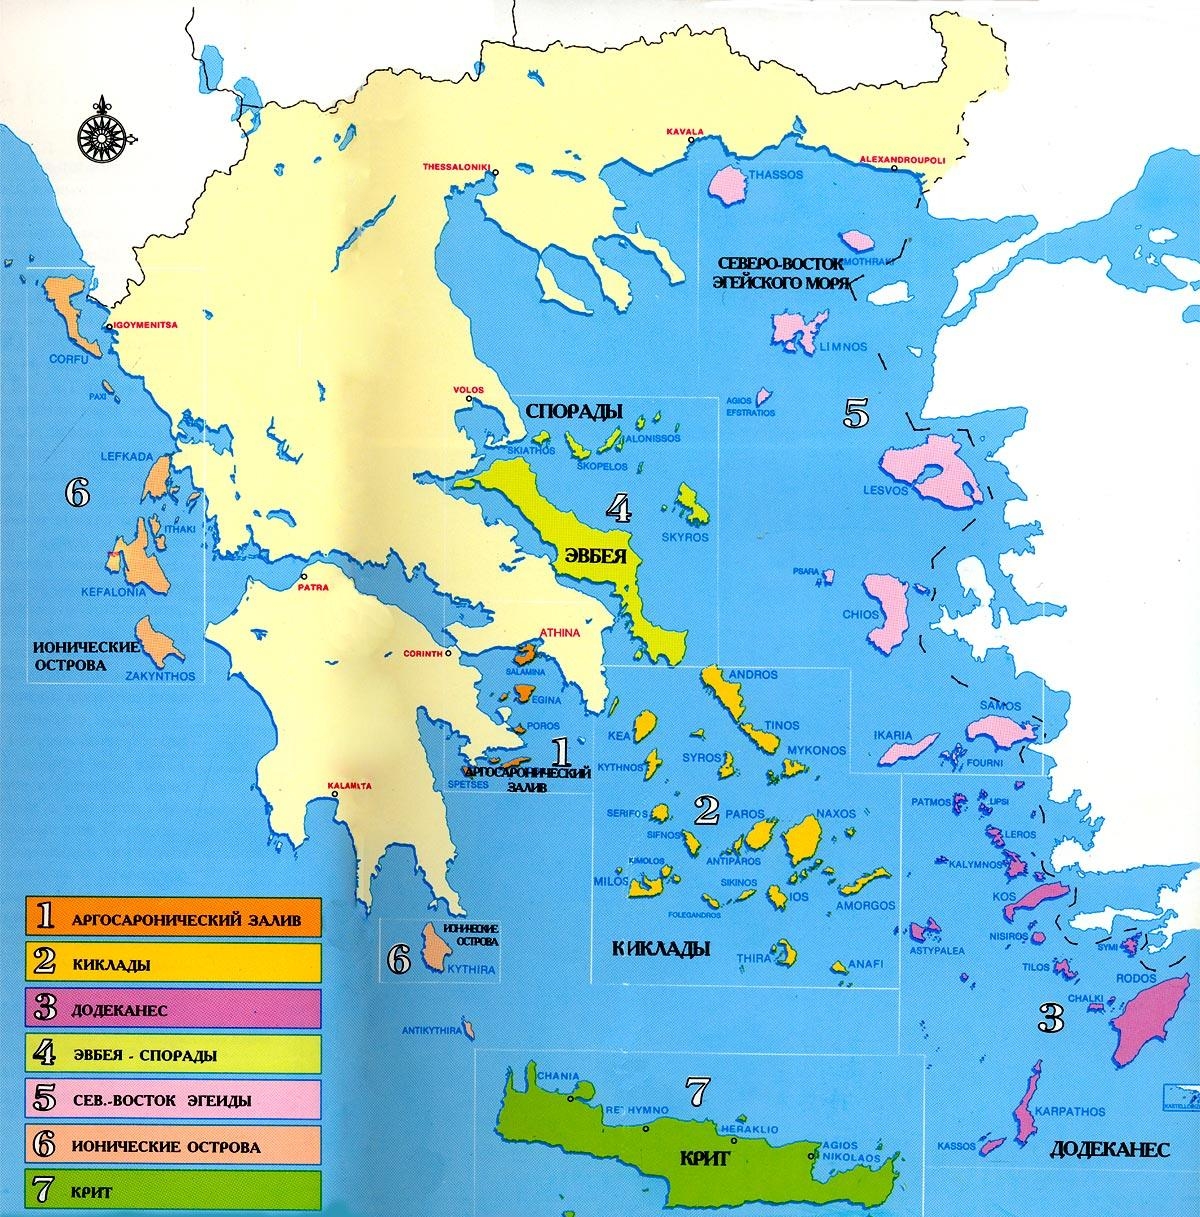 1.4 Карта островов Греции